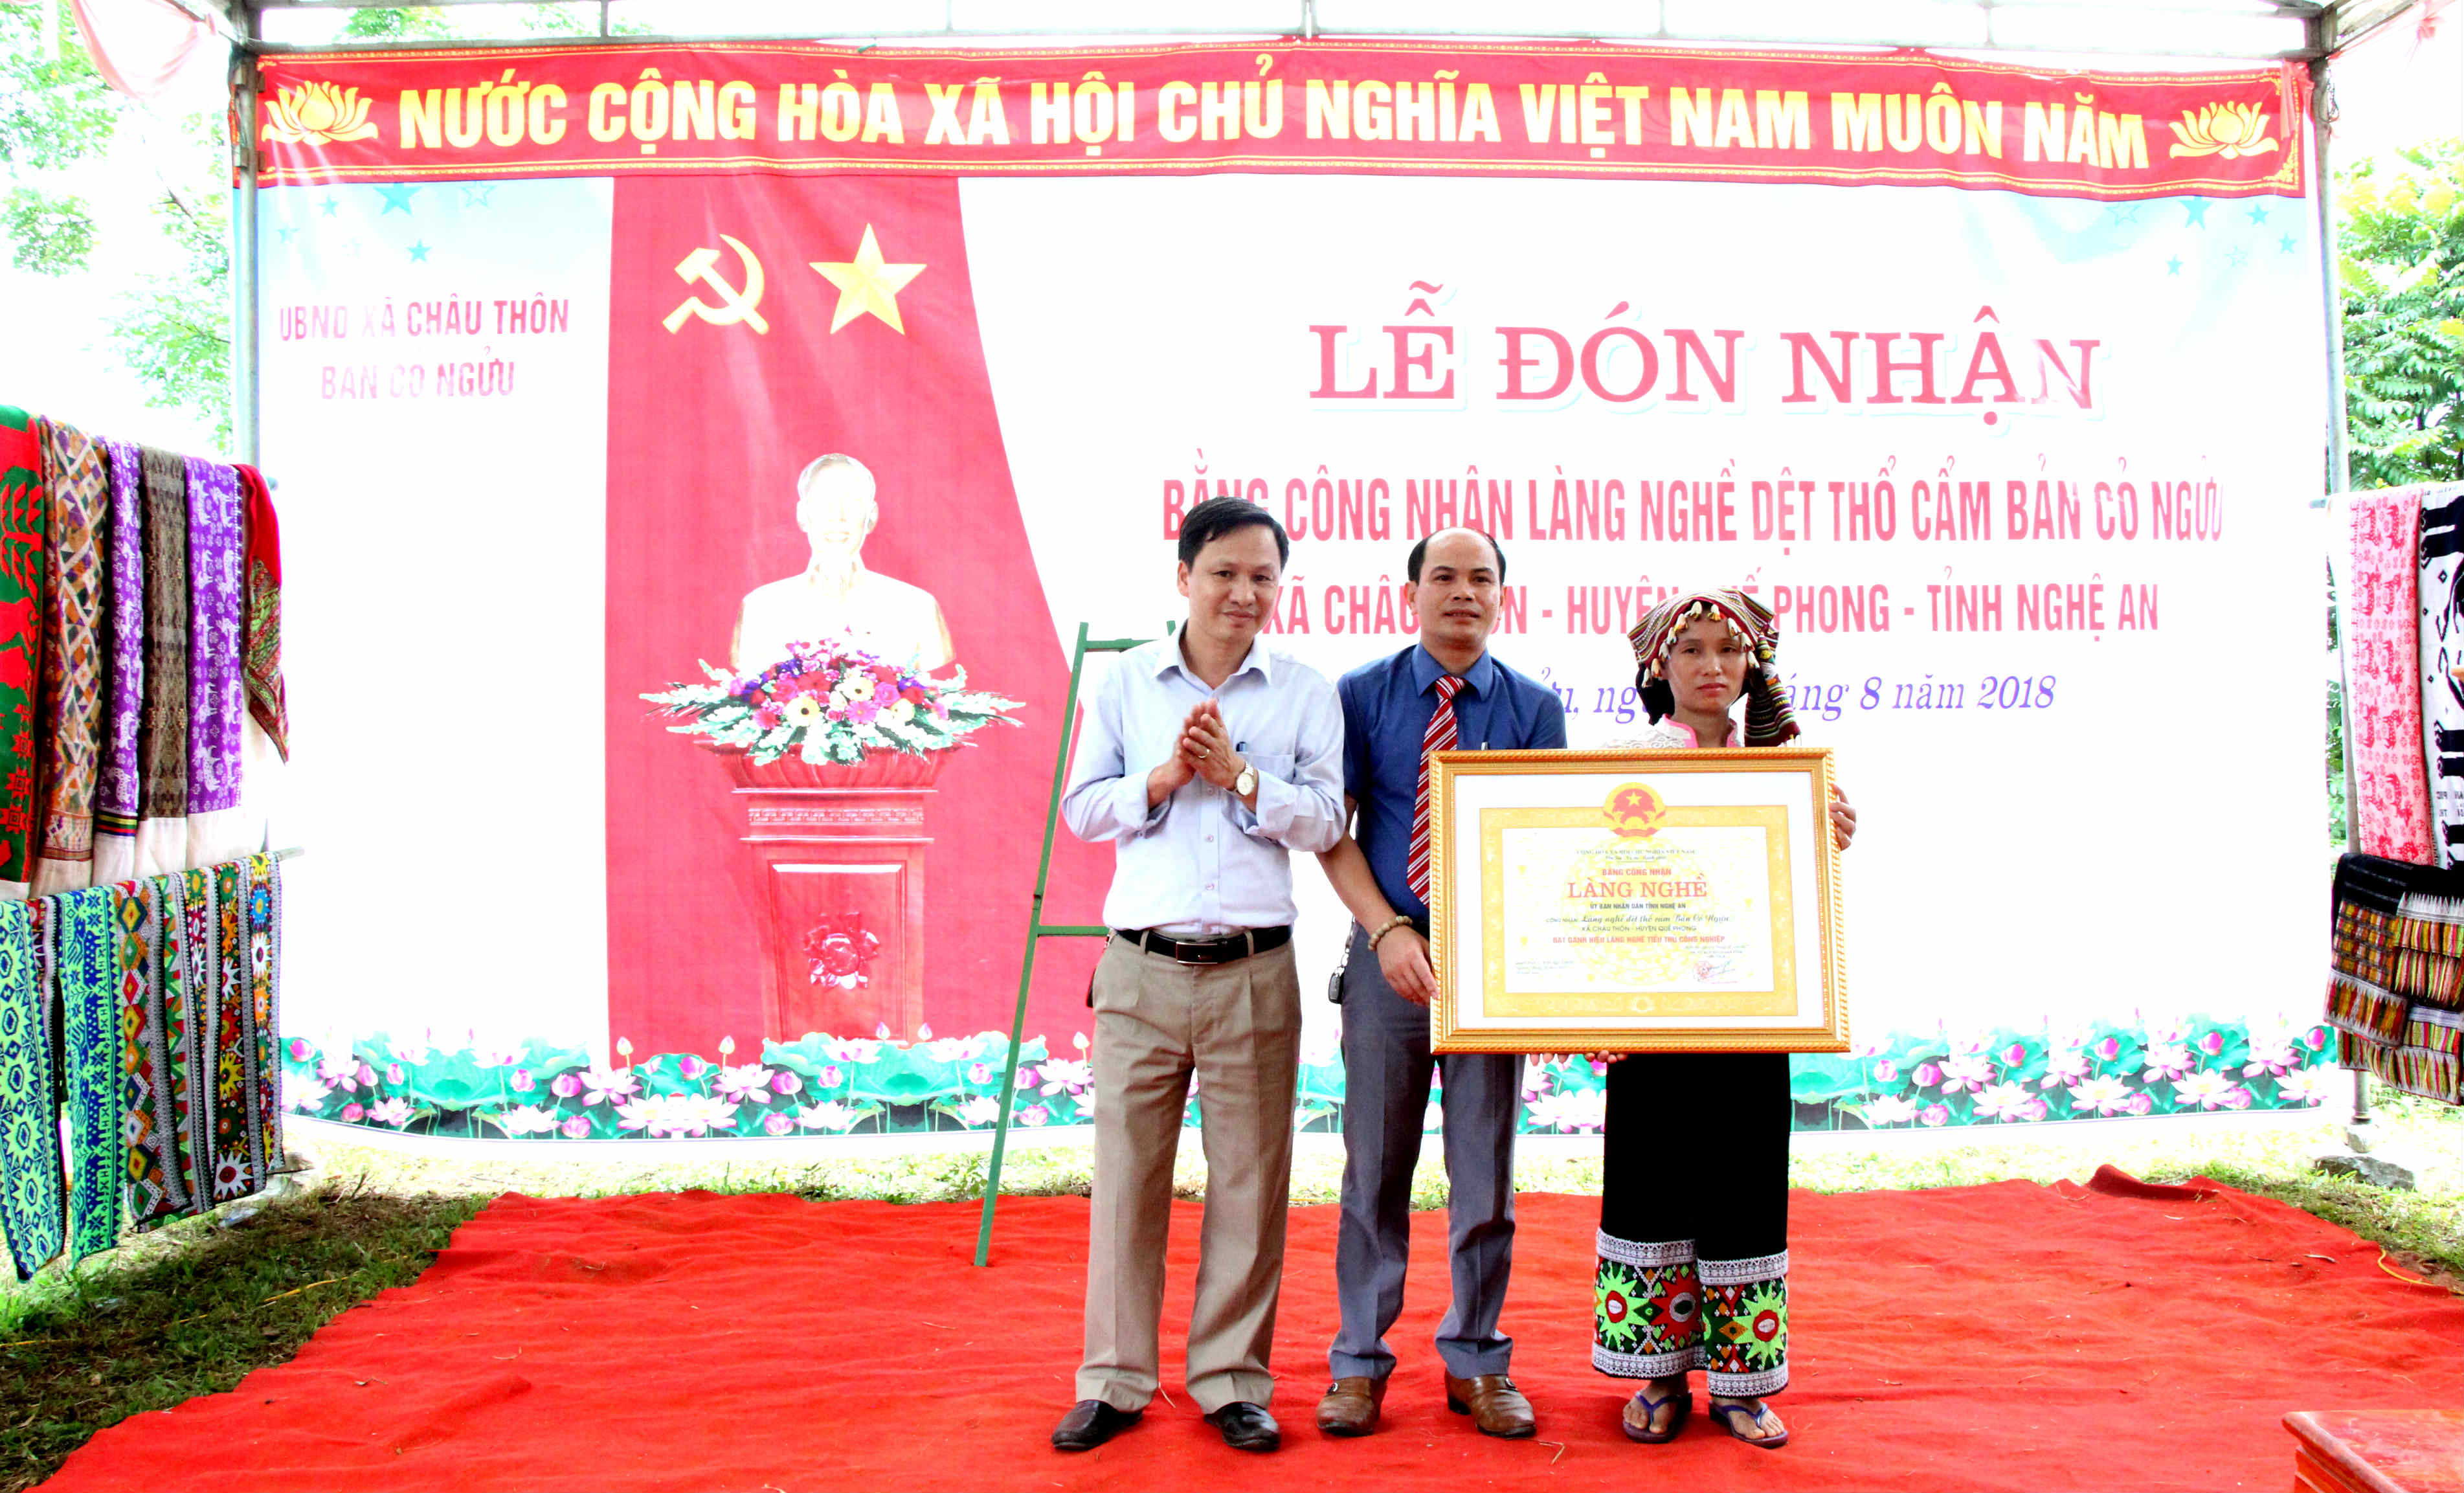 Đại diện chính quyền huyện Quế Phong, thay mặt UBND tỉnh Nghệ An trao bằng chứng nhận làng nghề cho bản Cỏ Ngựu. Ảnh : Hùng Cường